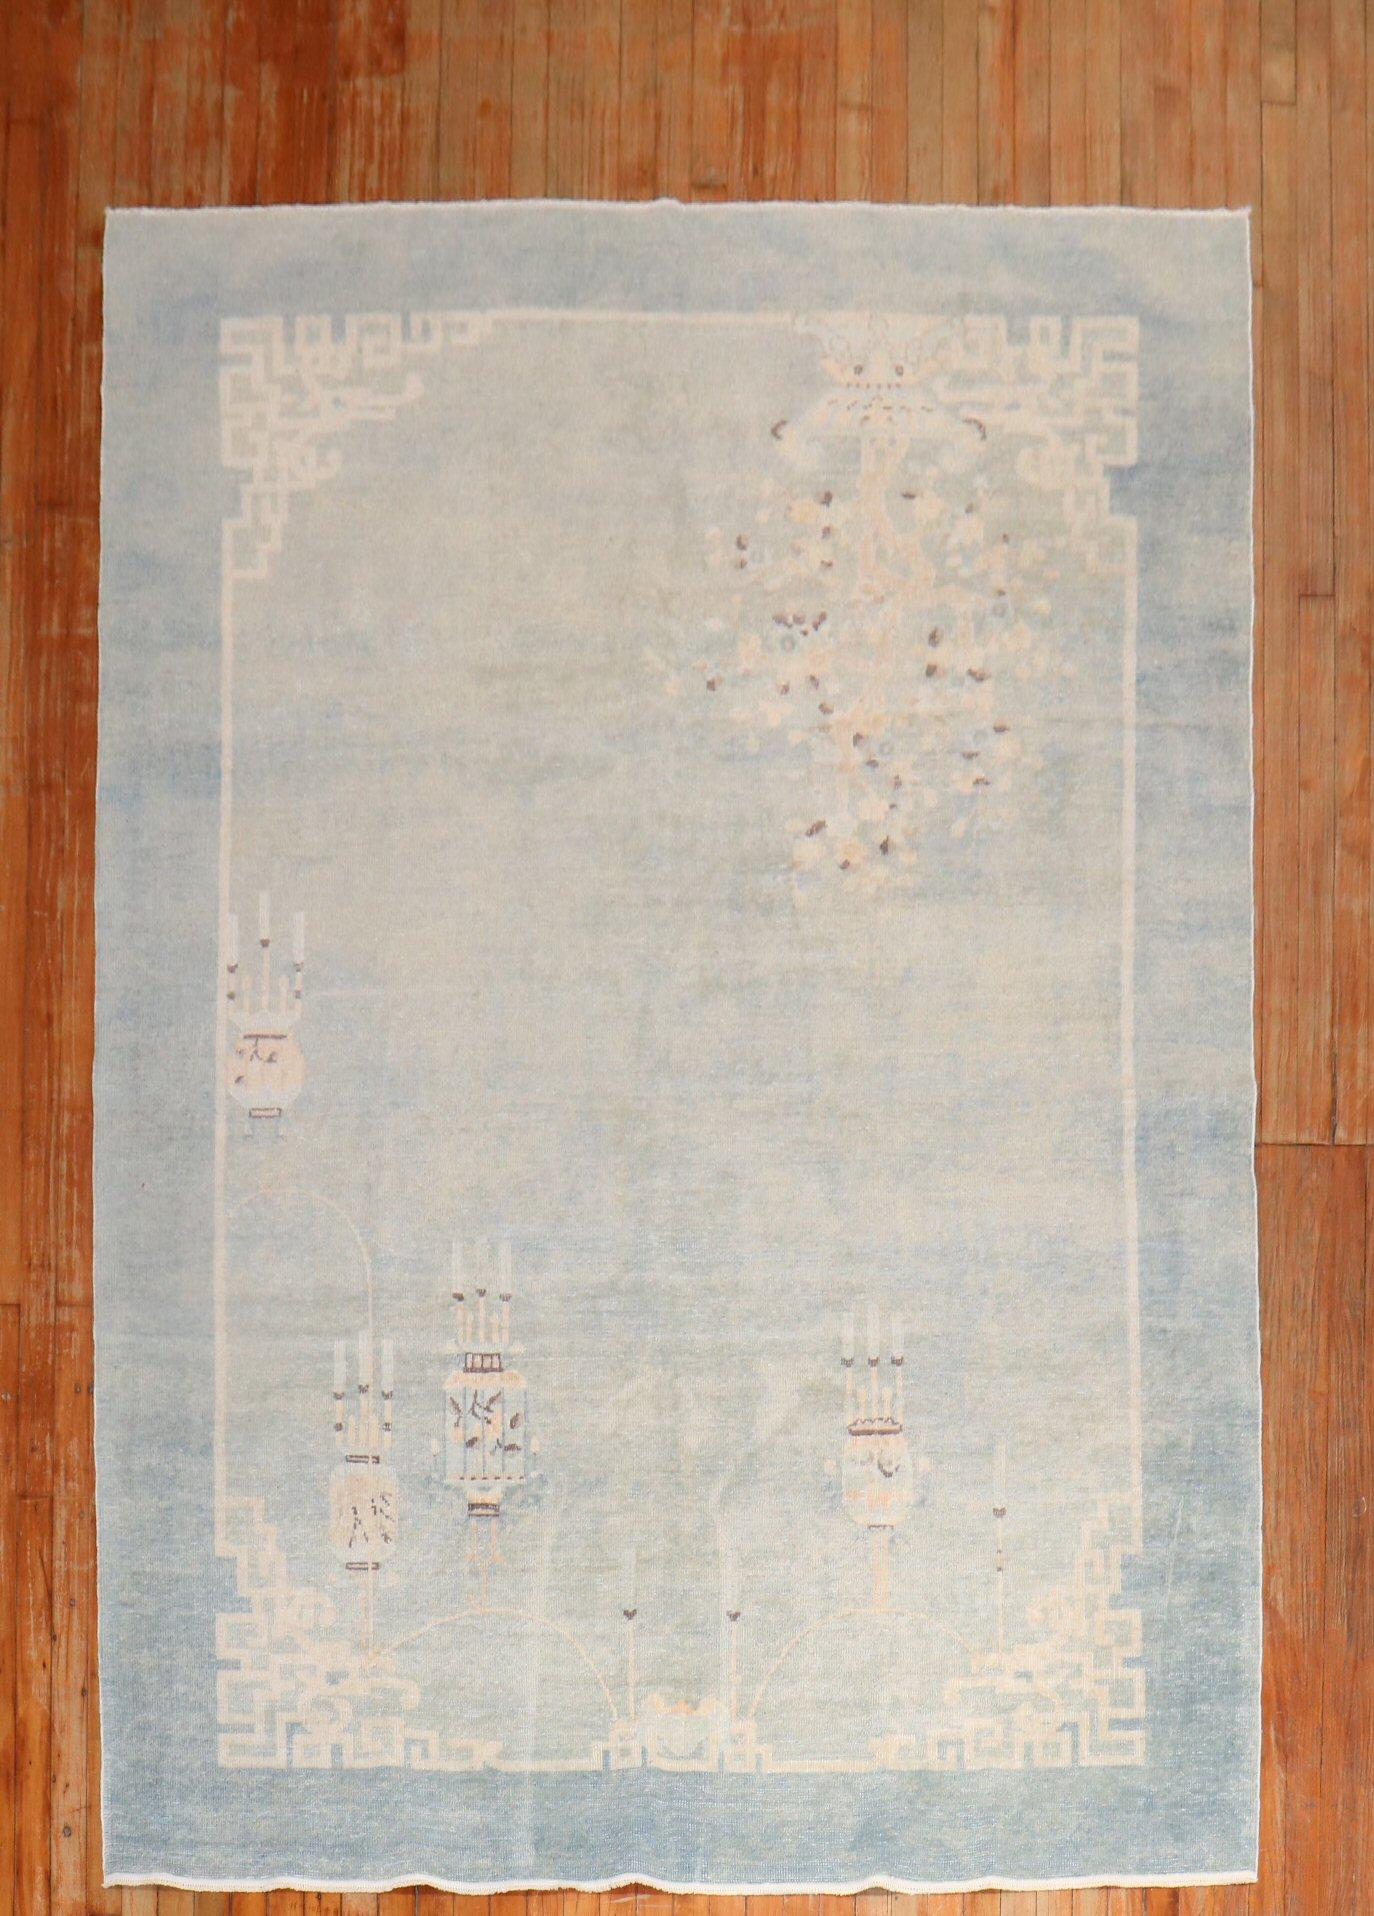 ein chinesischer Lauf aus dem frühen 20. Jahrhundert in den blassesten Blautönen

Maße: 6'1'' x 9'